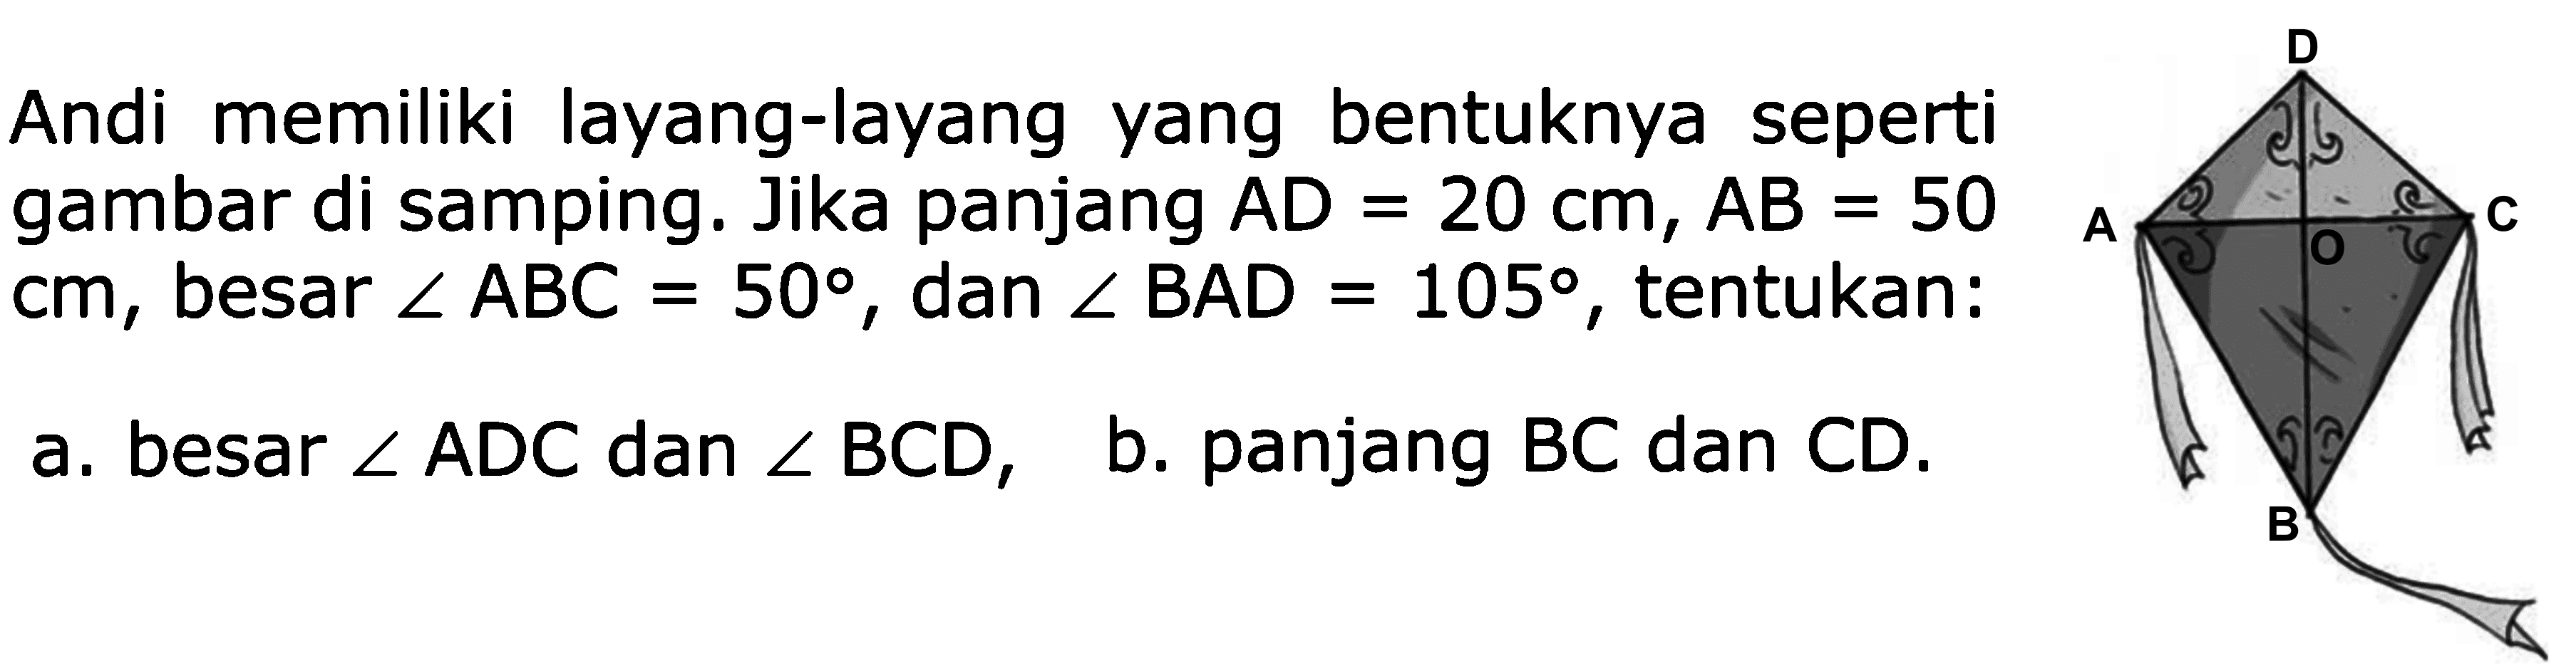 Andi memiliki layang-layang yang bentuknya seperti gambar di samping. Jika panjang AD = 20 cm, AB = 50cm, besar sudut ABC = 50, dan sudut BAD = 105, tentukan: a. besar sudut ADC dan sudut BCD, b. panjang BC dan CD.